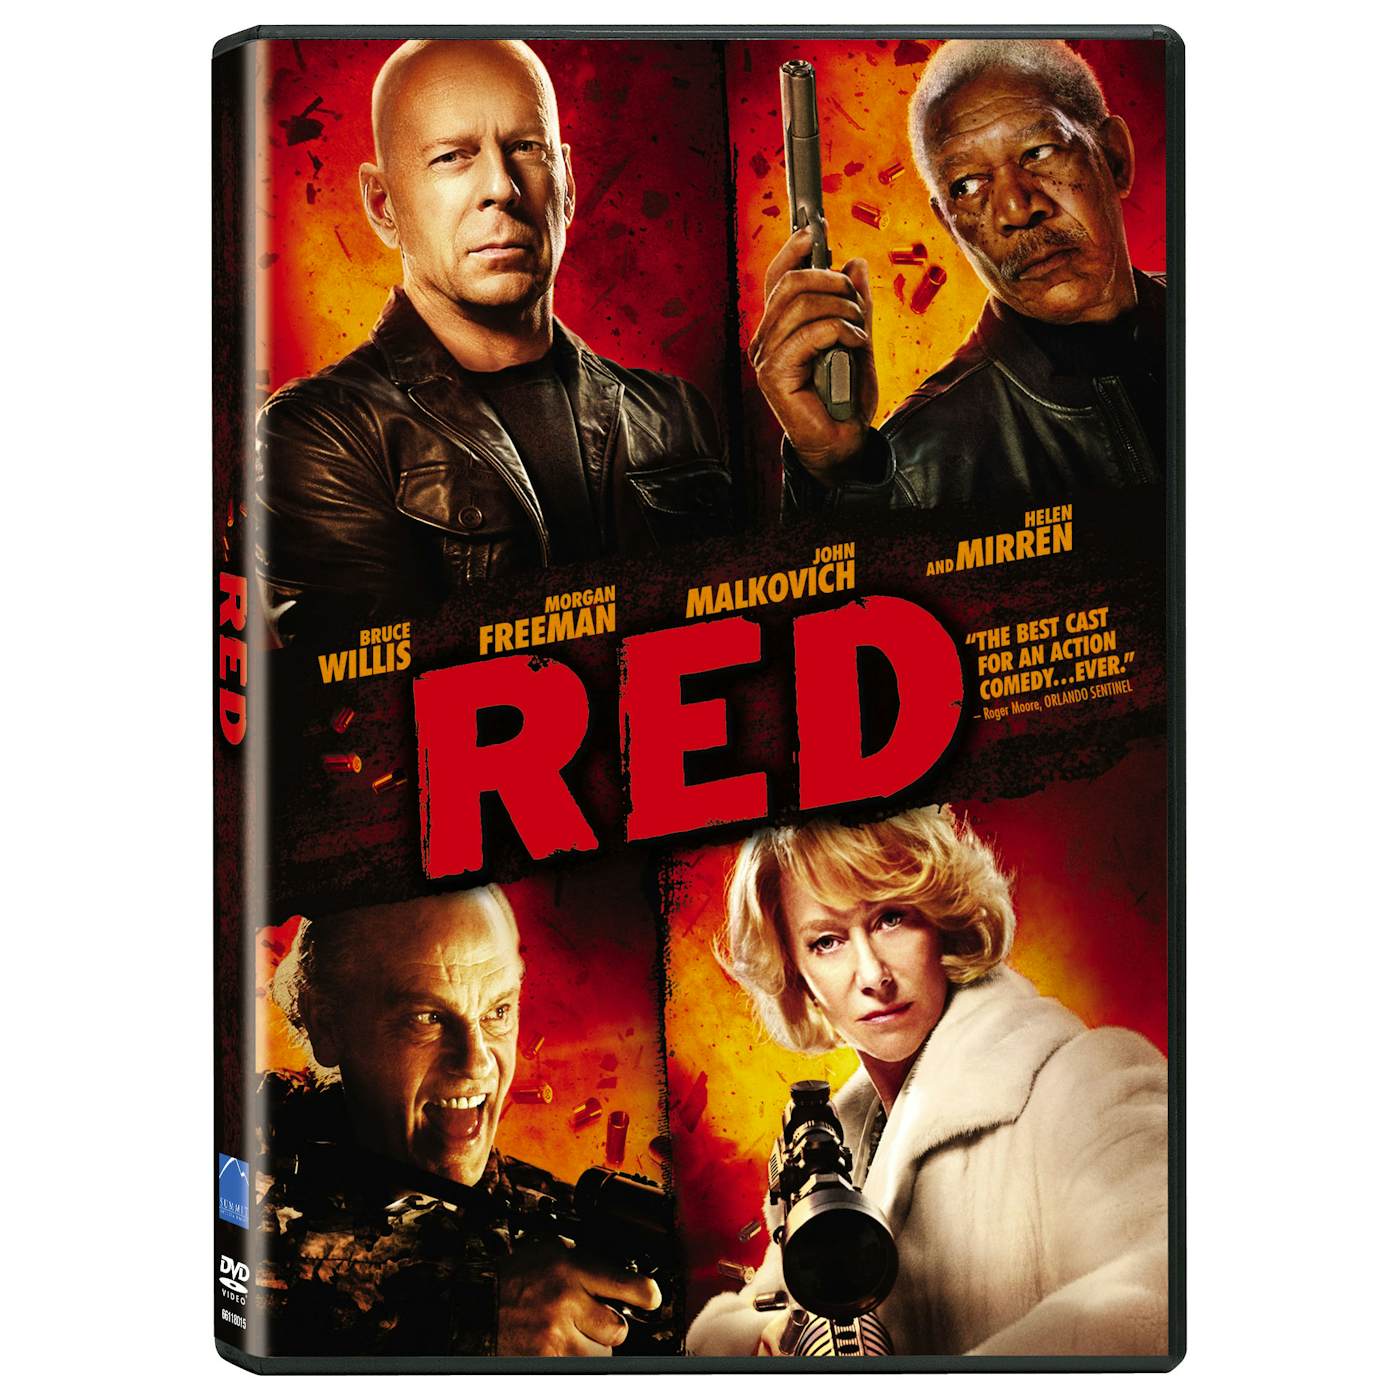 RED (2010) DVD